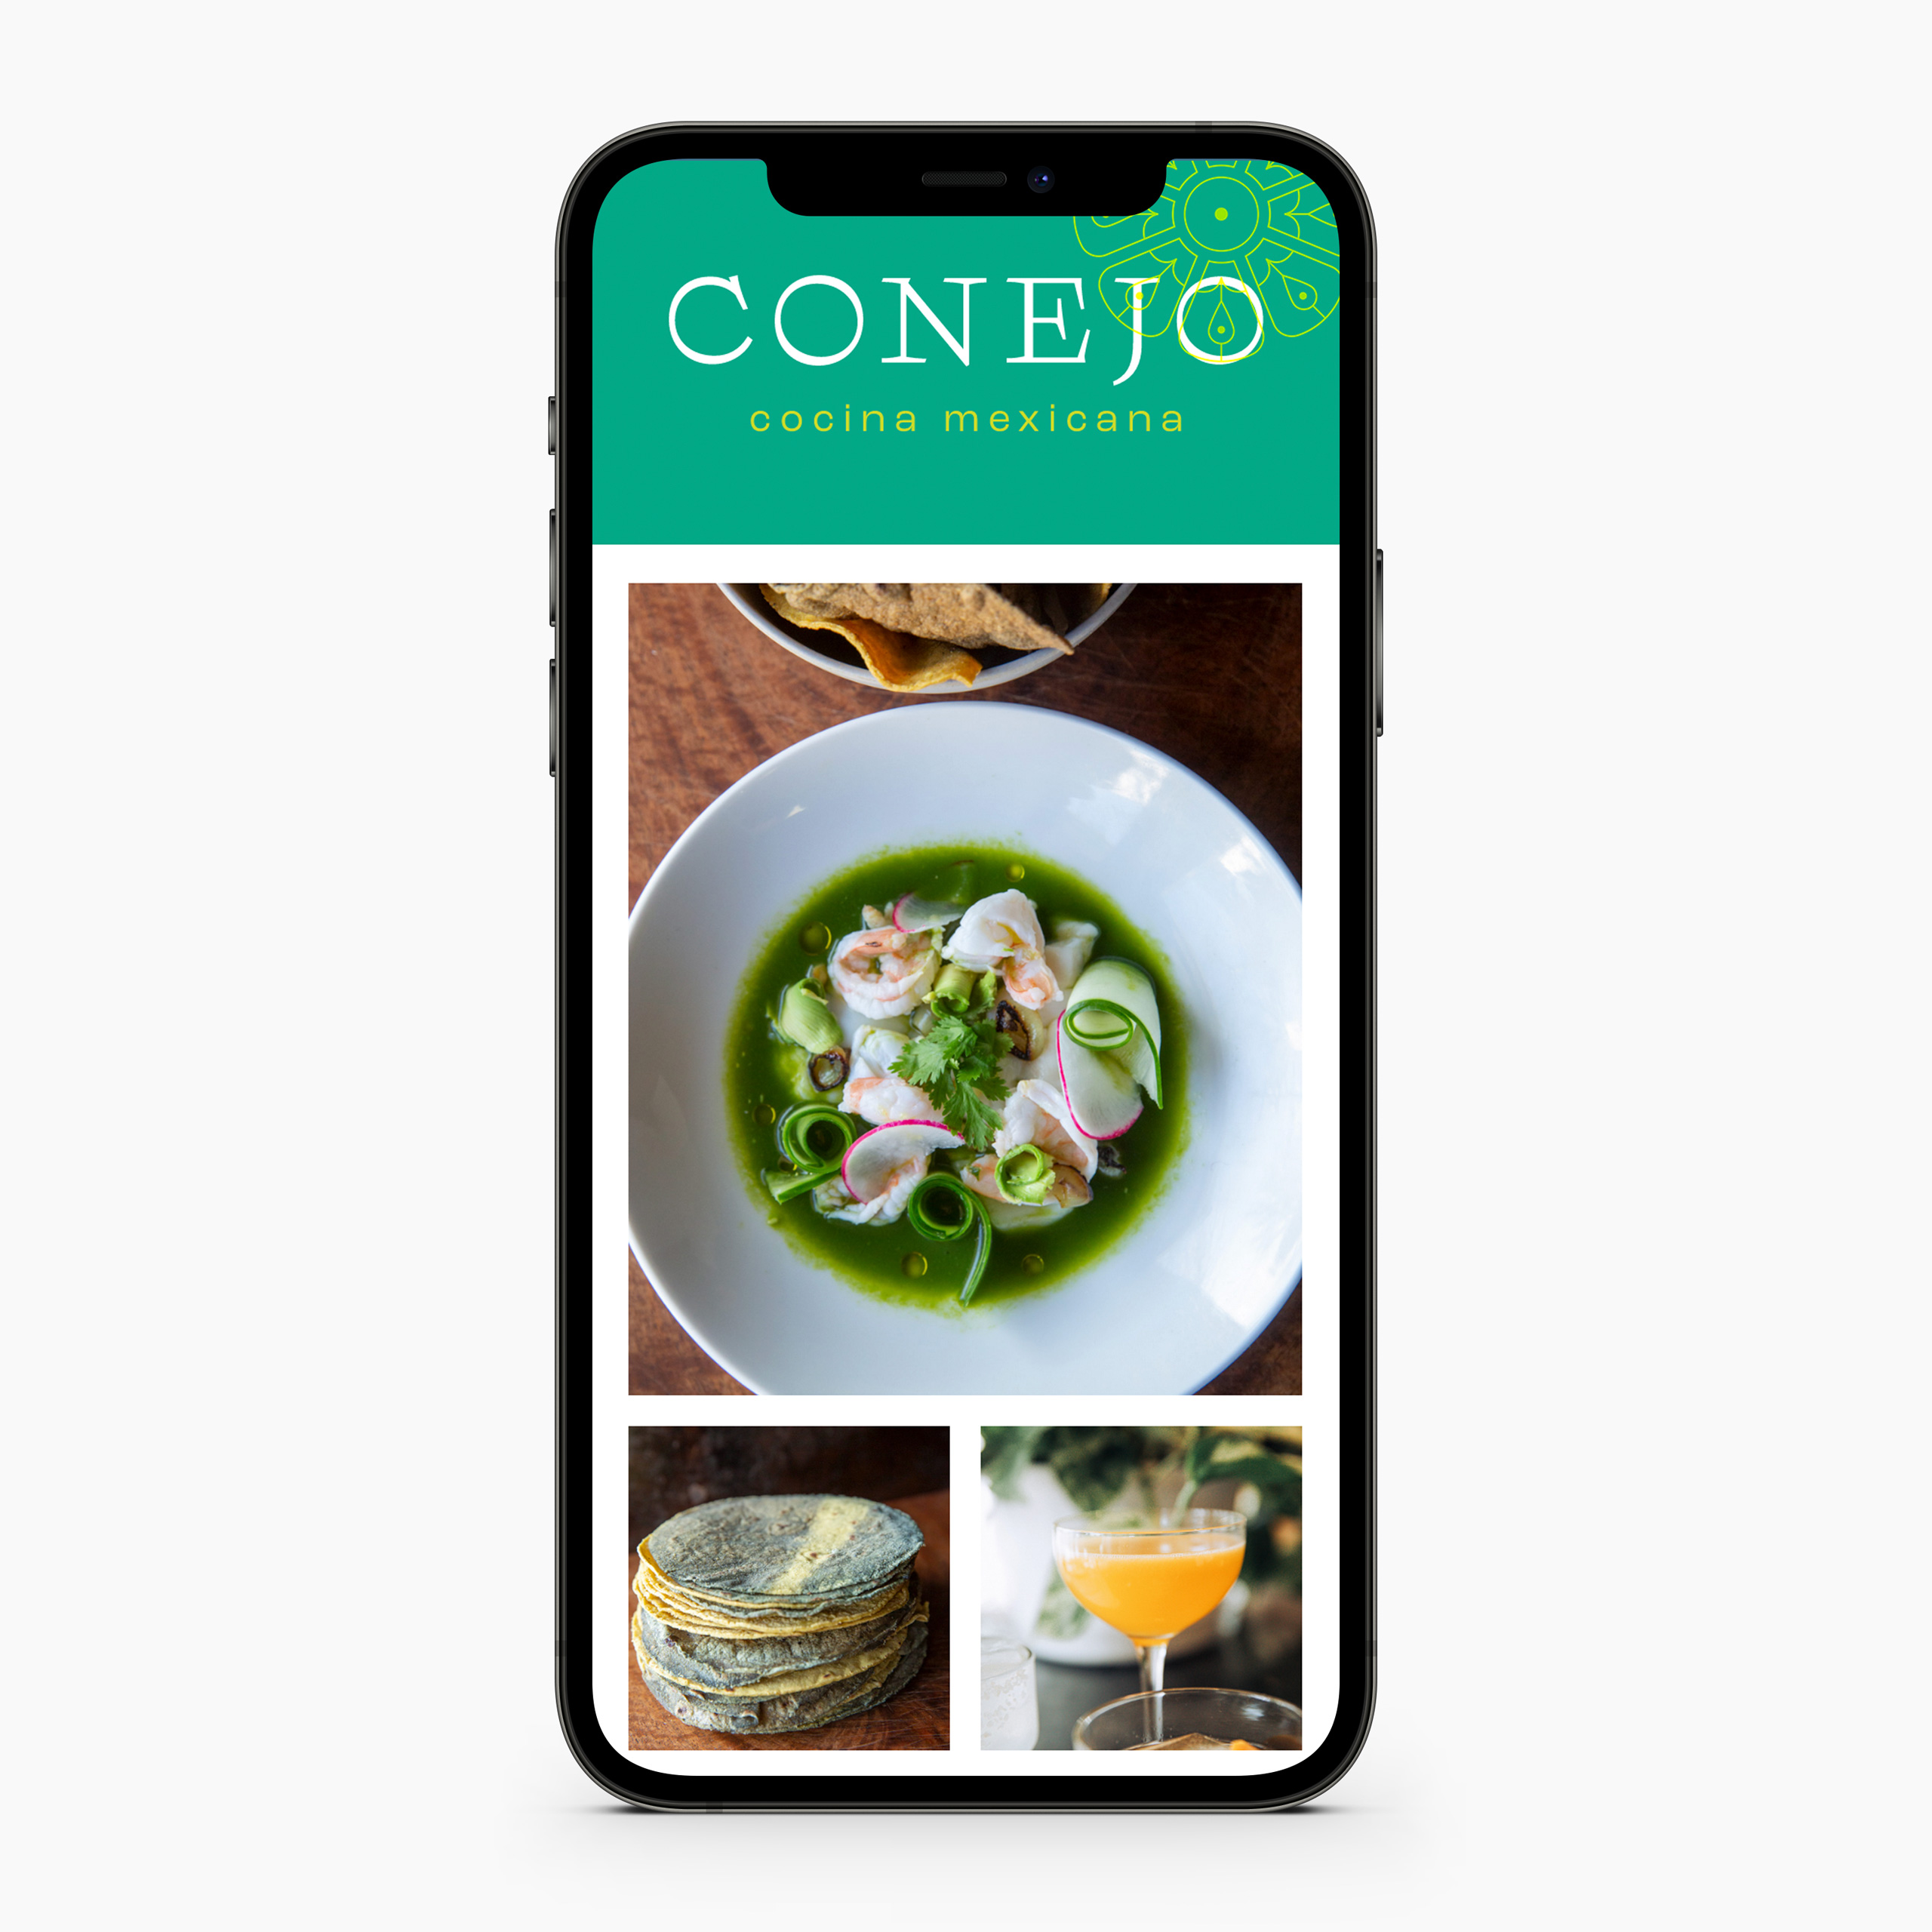 Conejo website on mobile